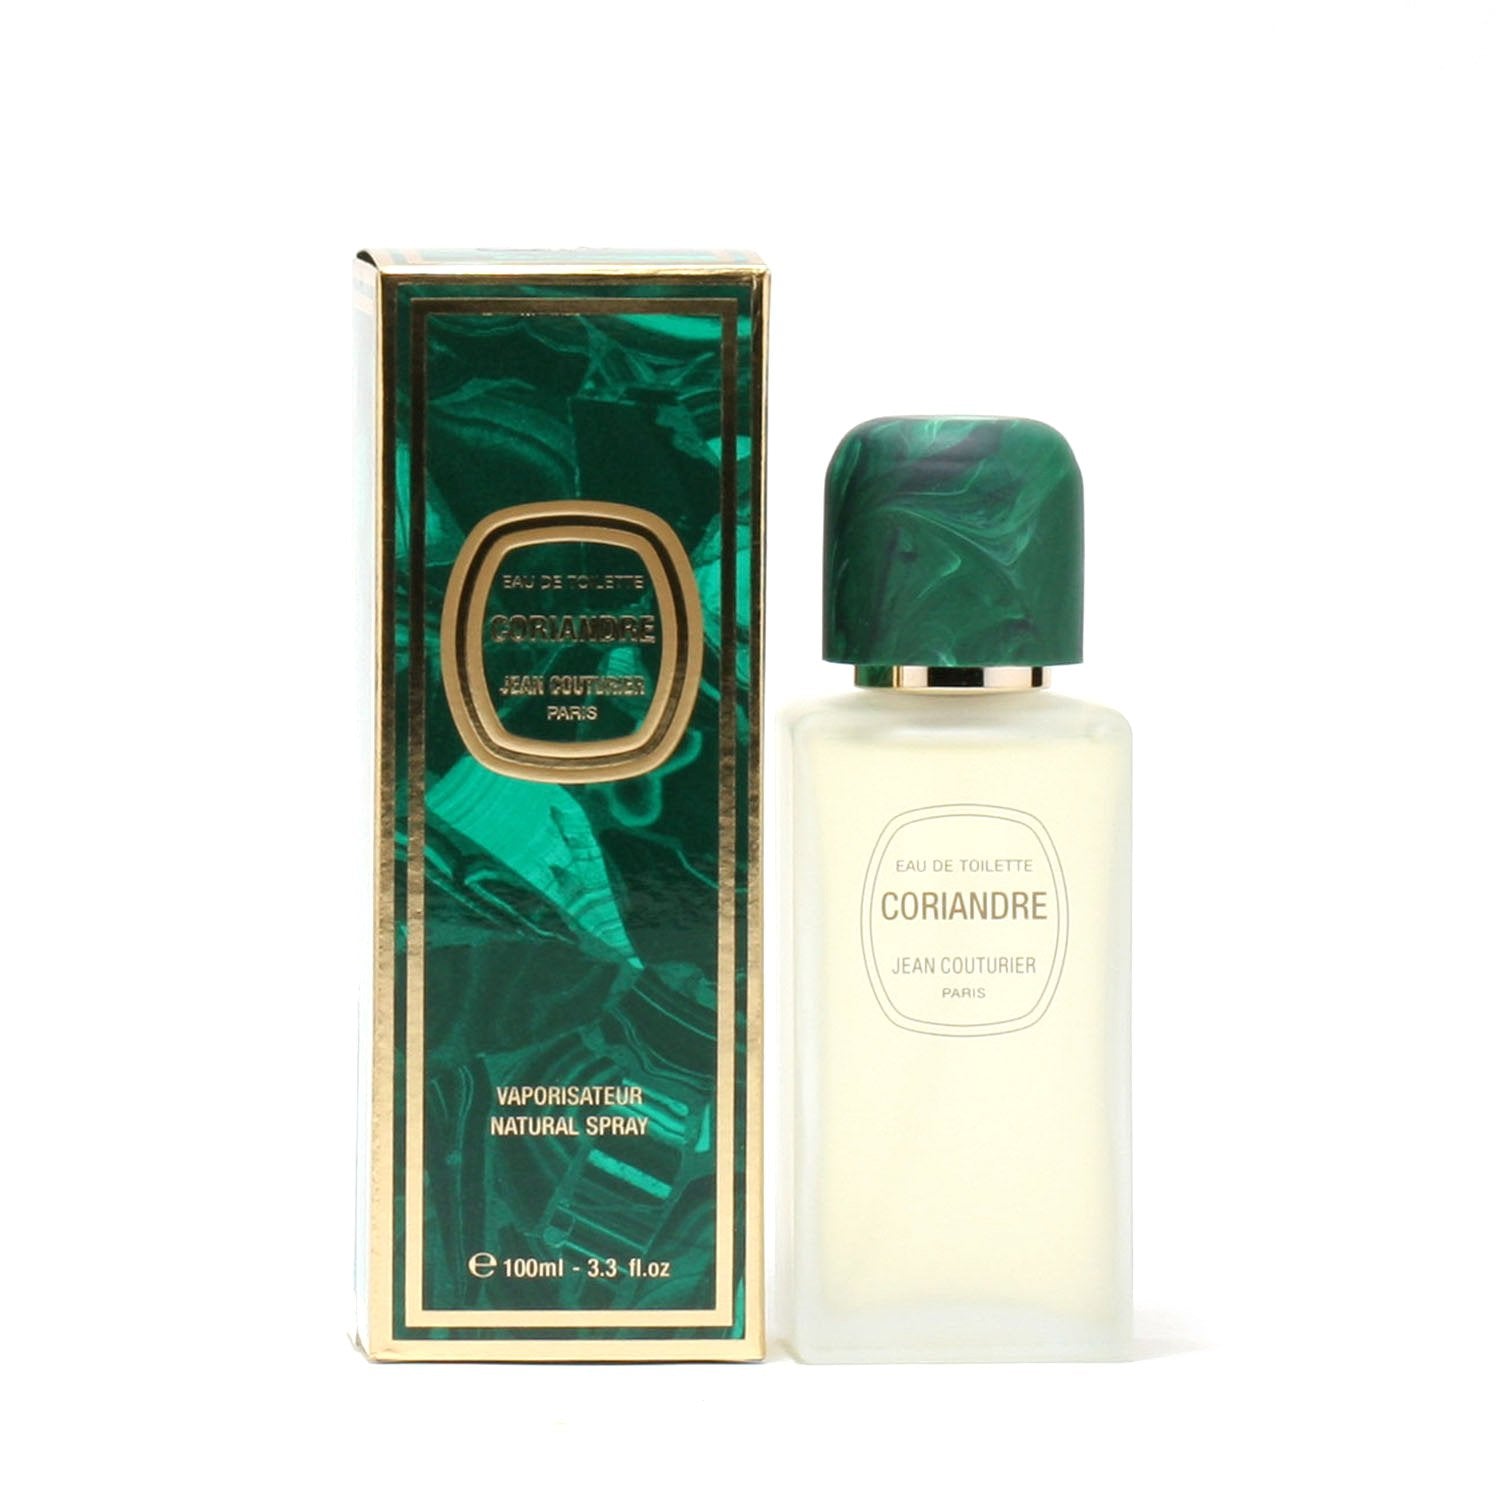 Perfume - CORIANDRE FOR WOMEN BY JEAN COUTURIER - EAU DE TOILETTE SPRAY, 3.3 OZ